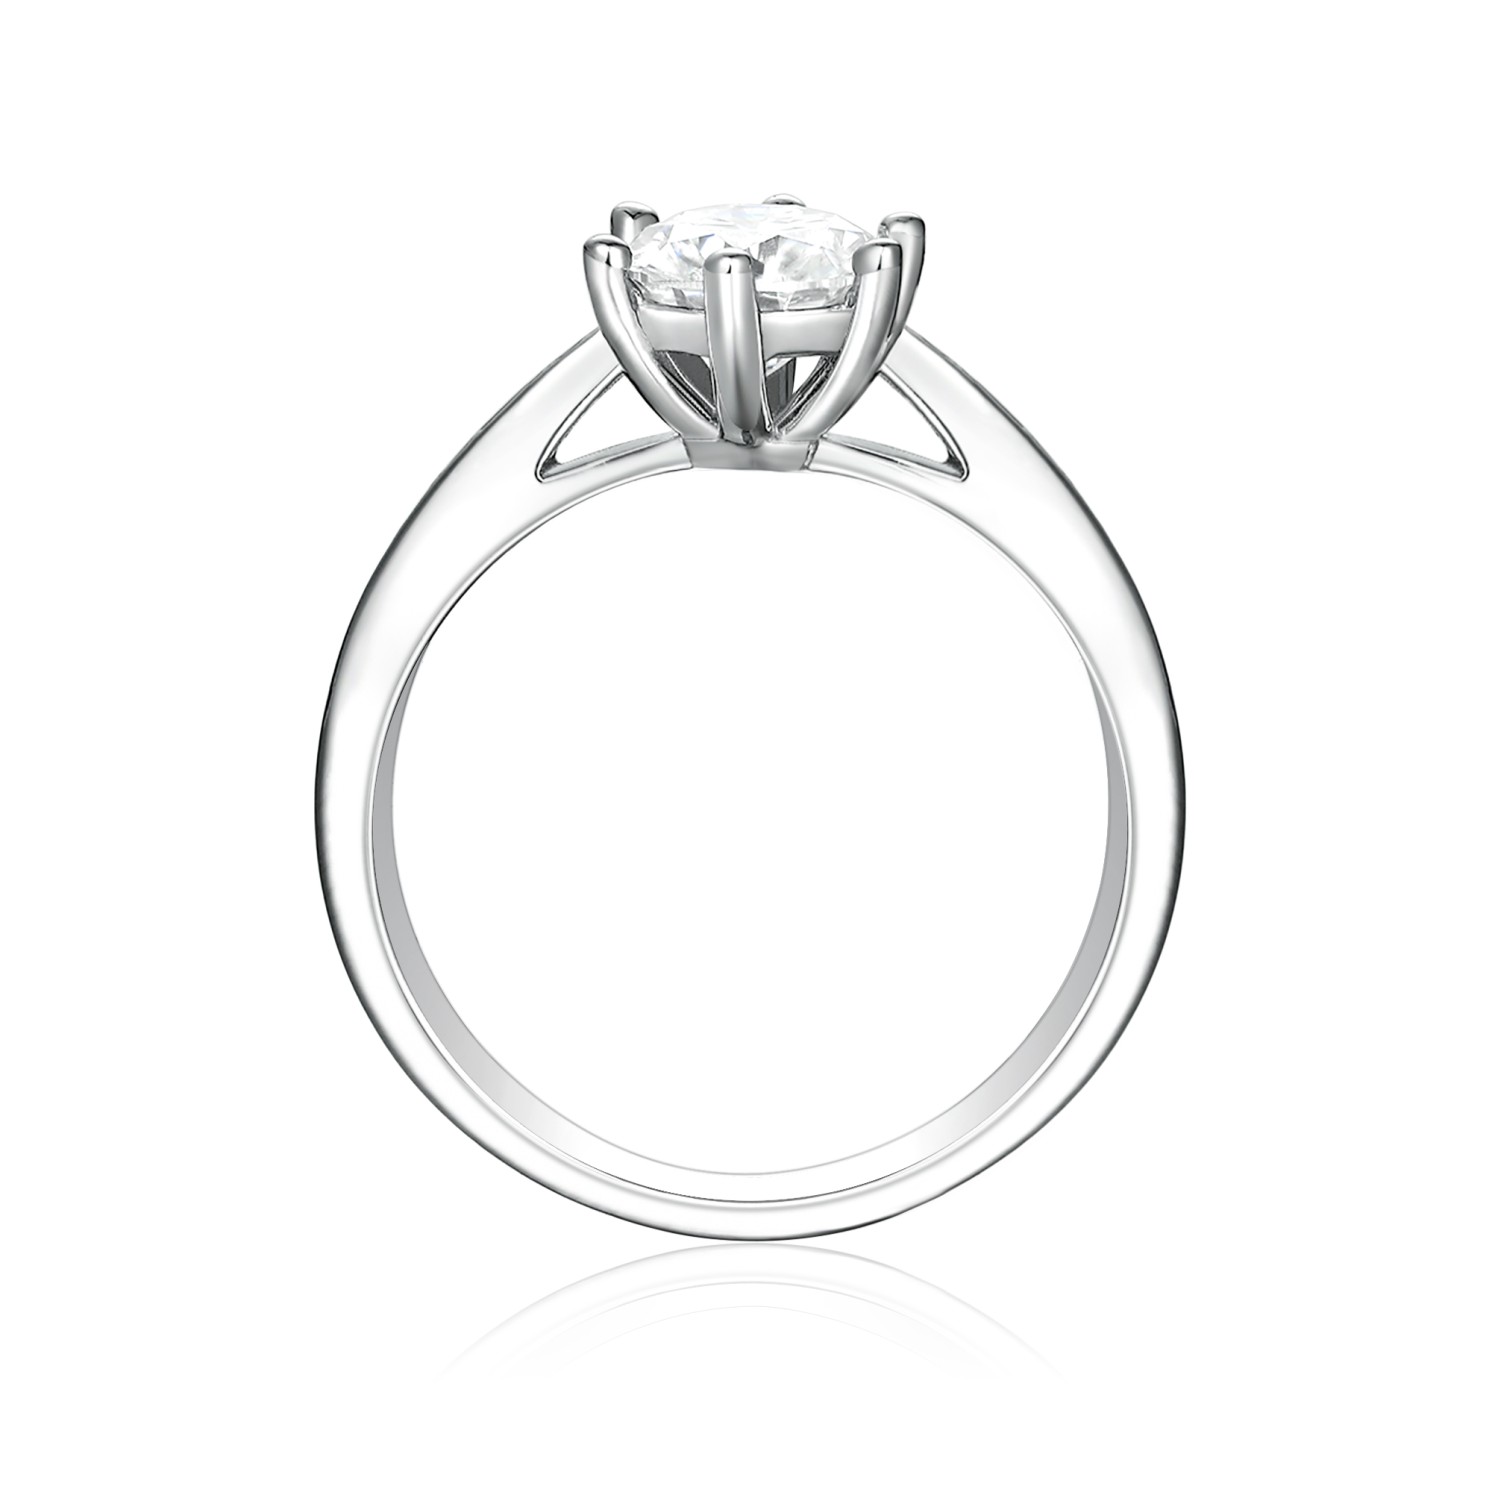 Sophia Ring - Moissanite Engagement Ring Pavé Side Stones